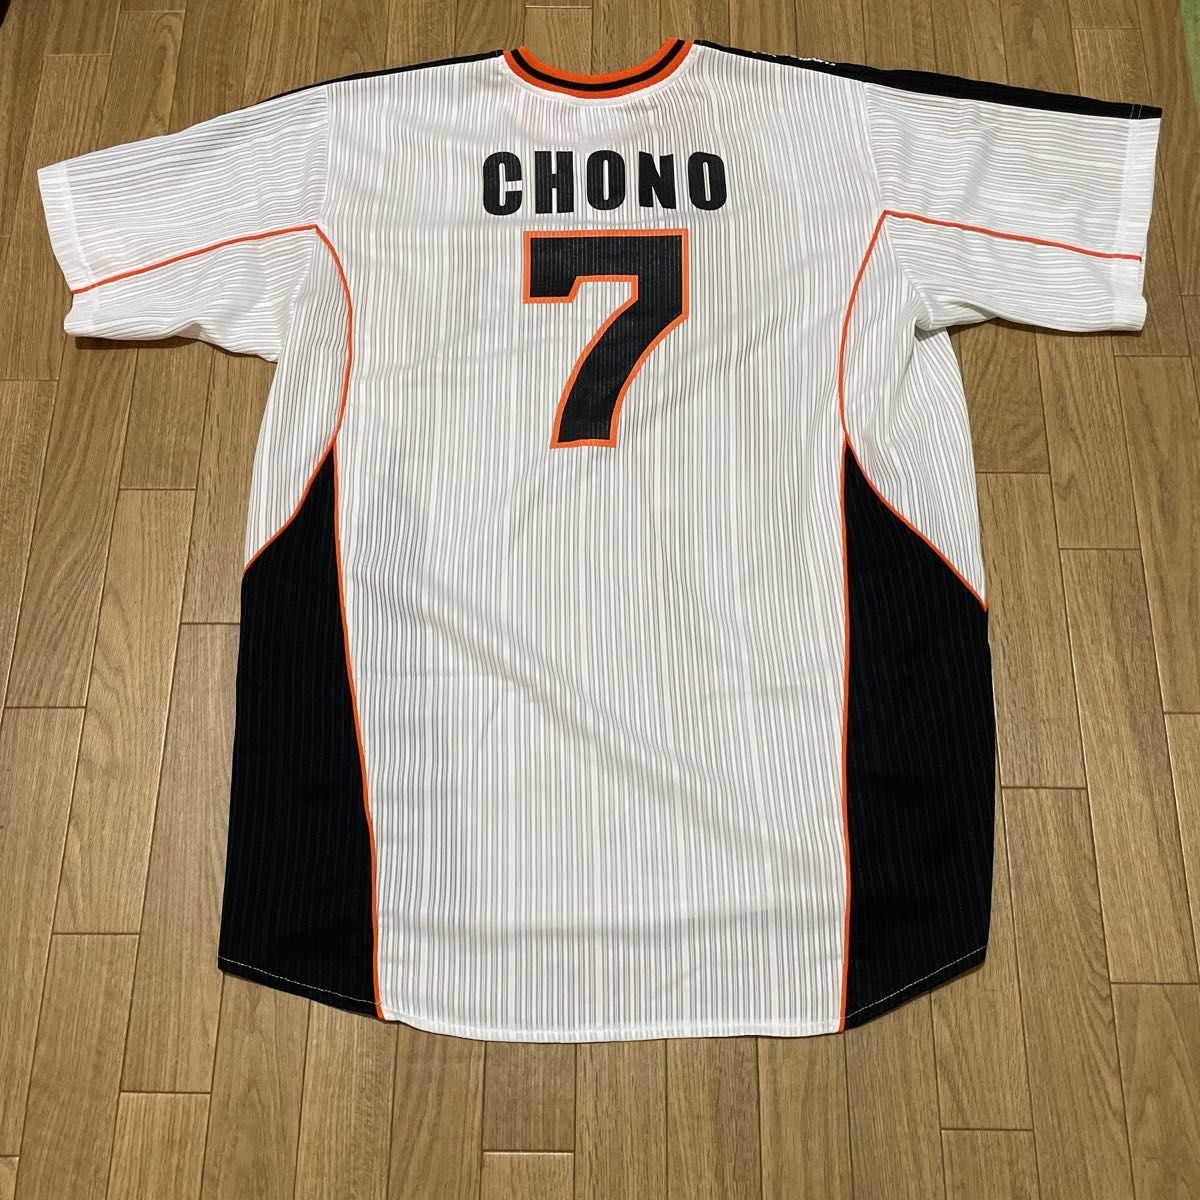 読売ジャイアンツ 巨人 長野久義選手 ユニフォーム ベースボールシャツ